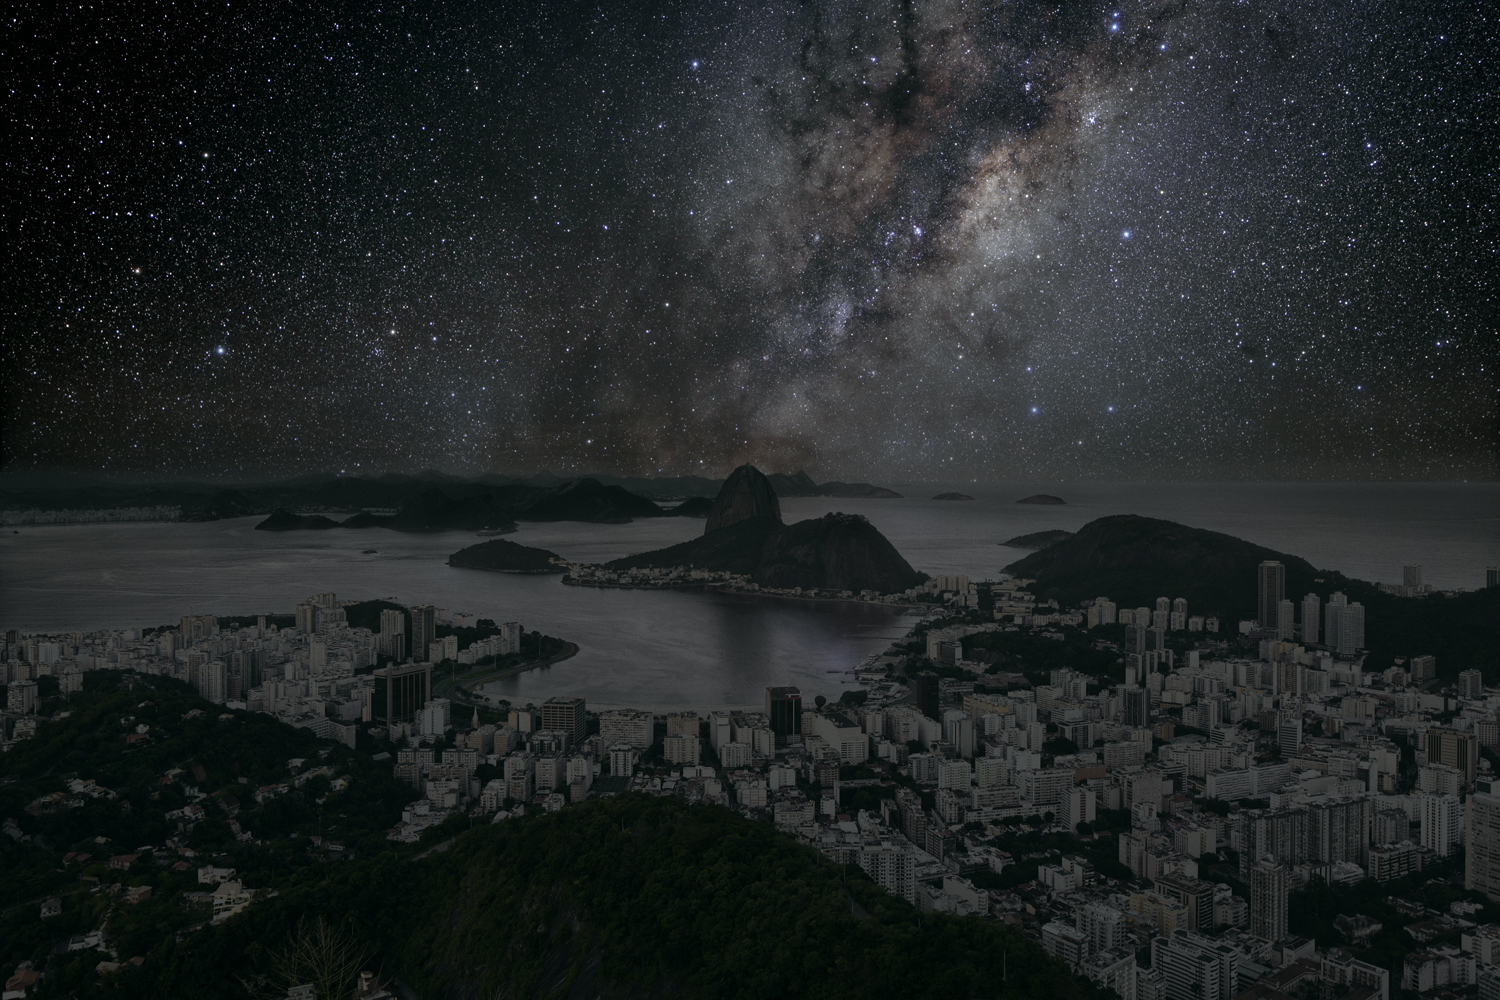 Rio de Janeiro 22° 56’ 42’’ S 2011-06-04 lst 12:34